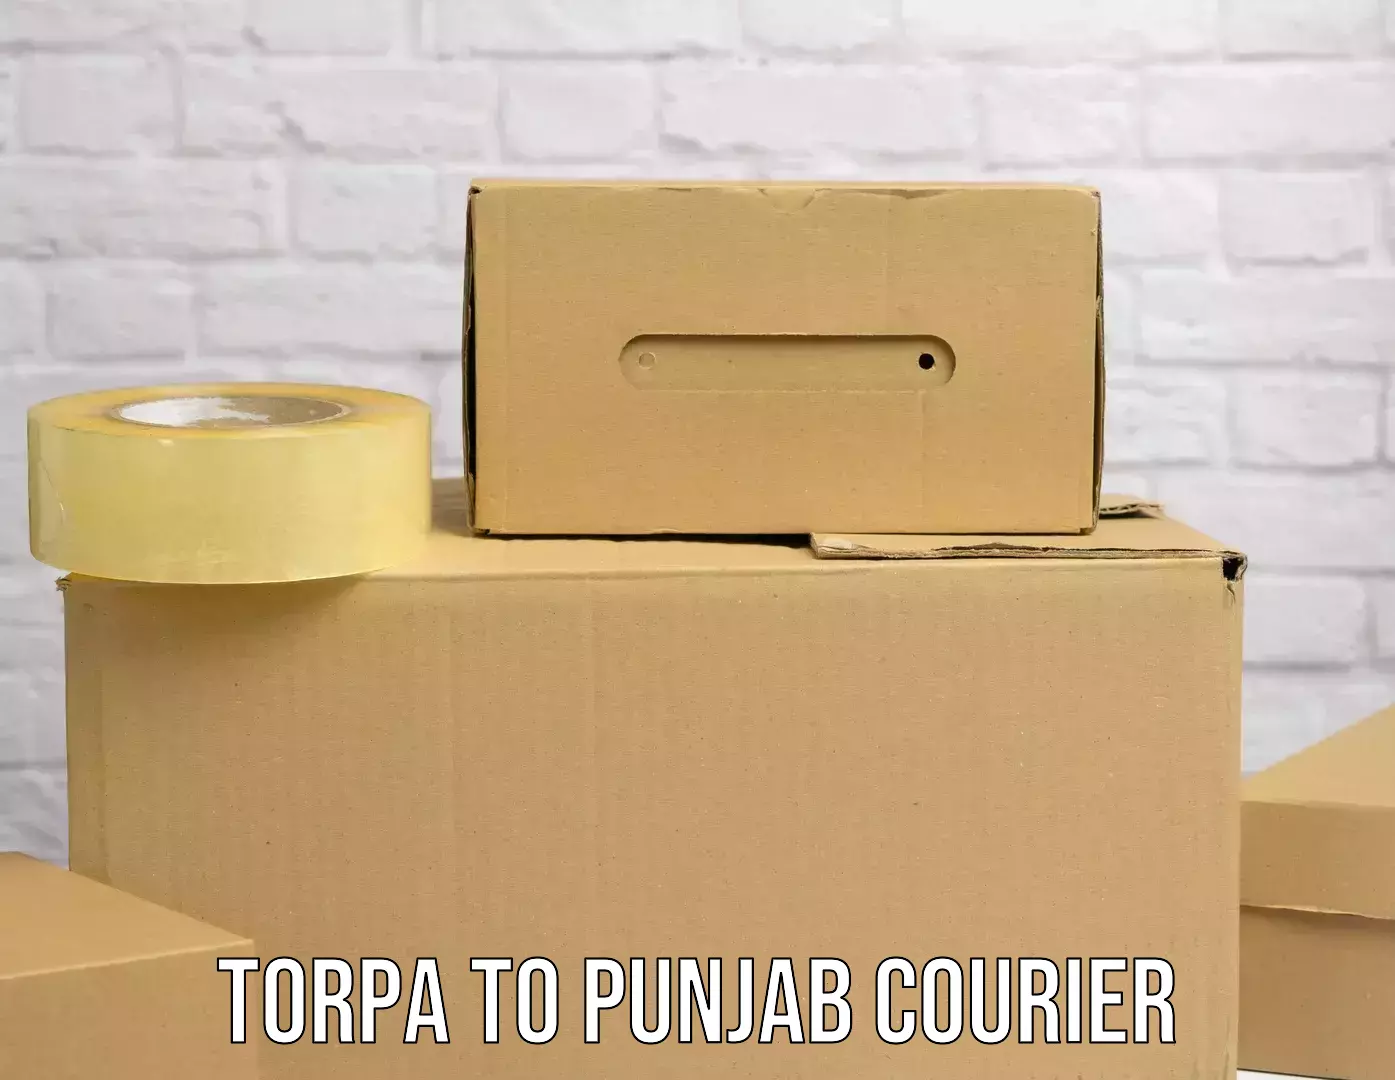 Bulk shipment in Torpa to Punjab